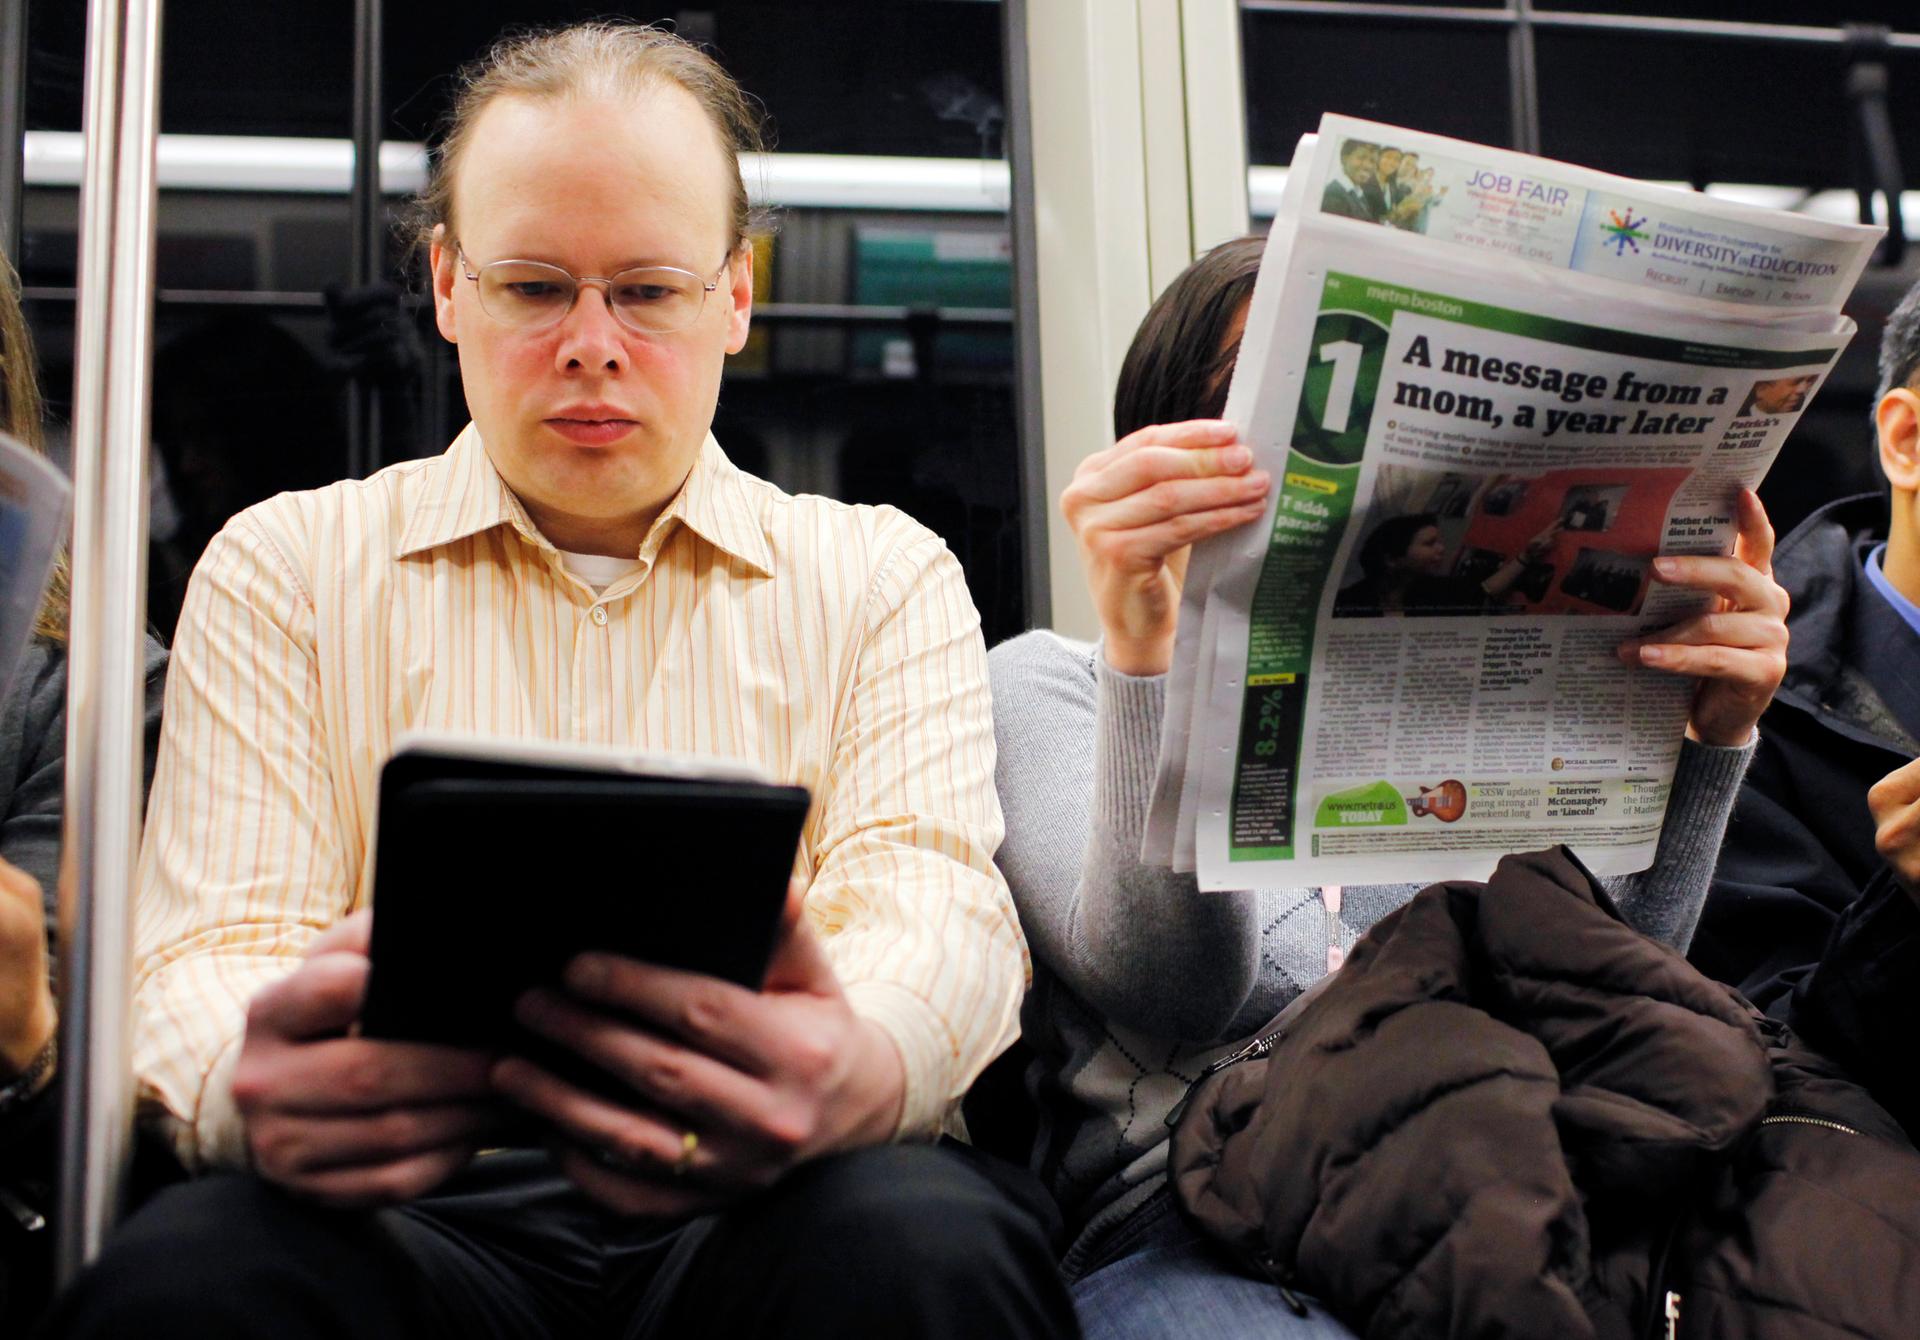 Read the internet. Чтение новостей в интернете. Газета про гаджеты. Газеты против интернета. Человек читает новости в интернете.